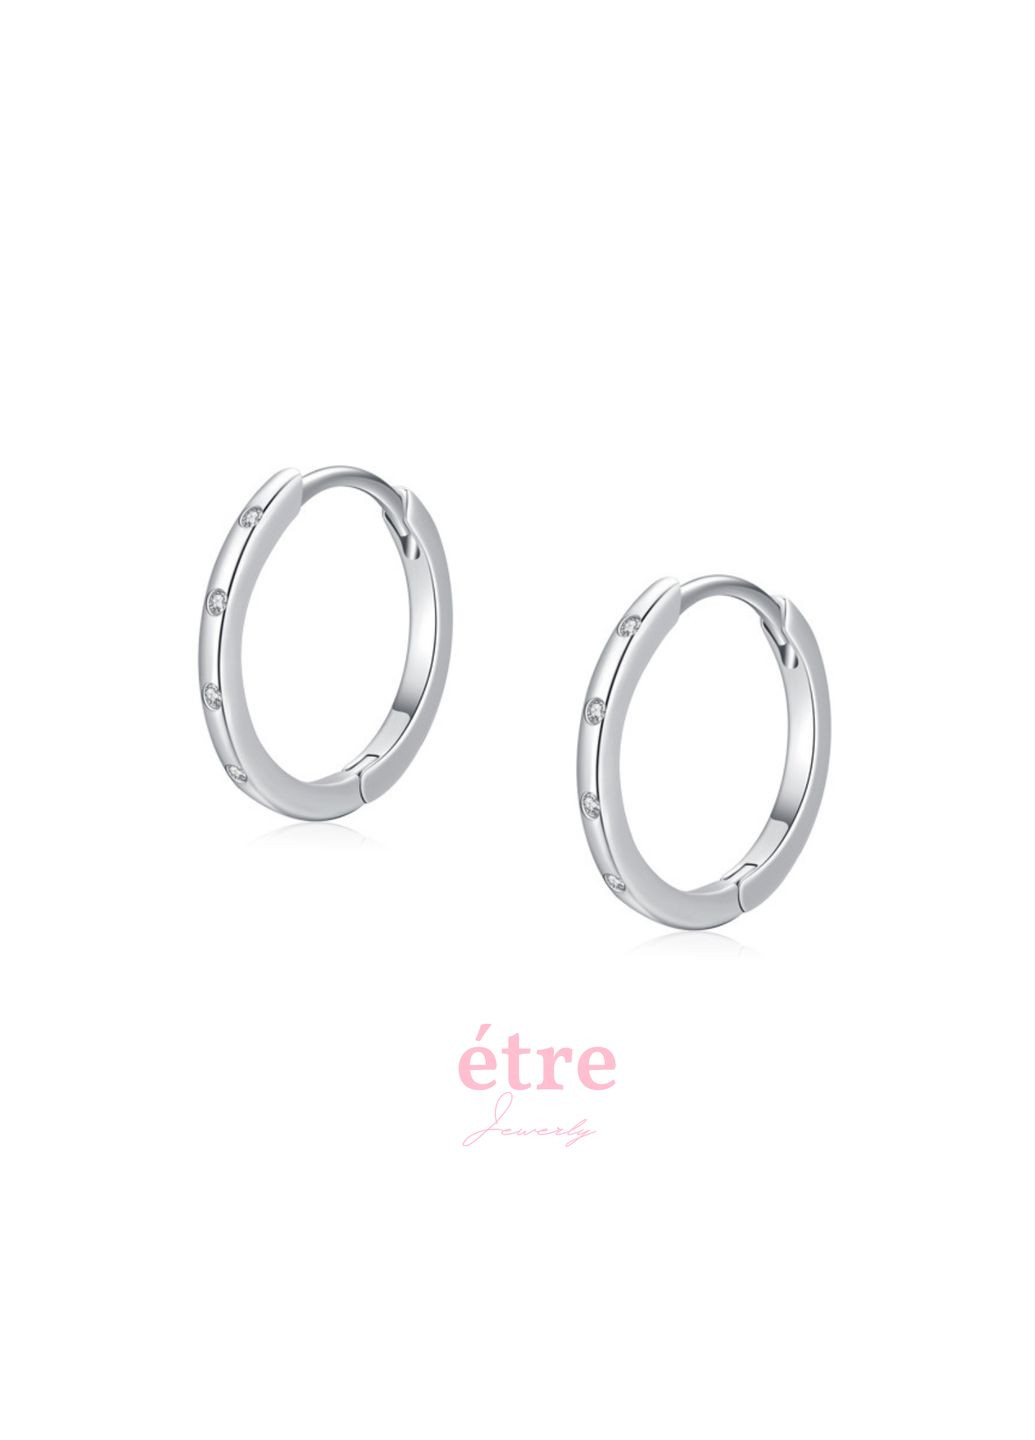 Сережки кільця срібні мінімалізм, стильні срібні S 925 сережки кільця, модні кульчики подарунок дівчині СКС5 Італія Etre (292318477)